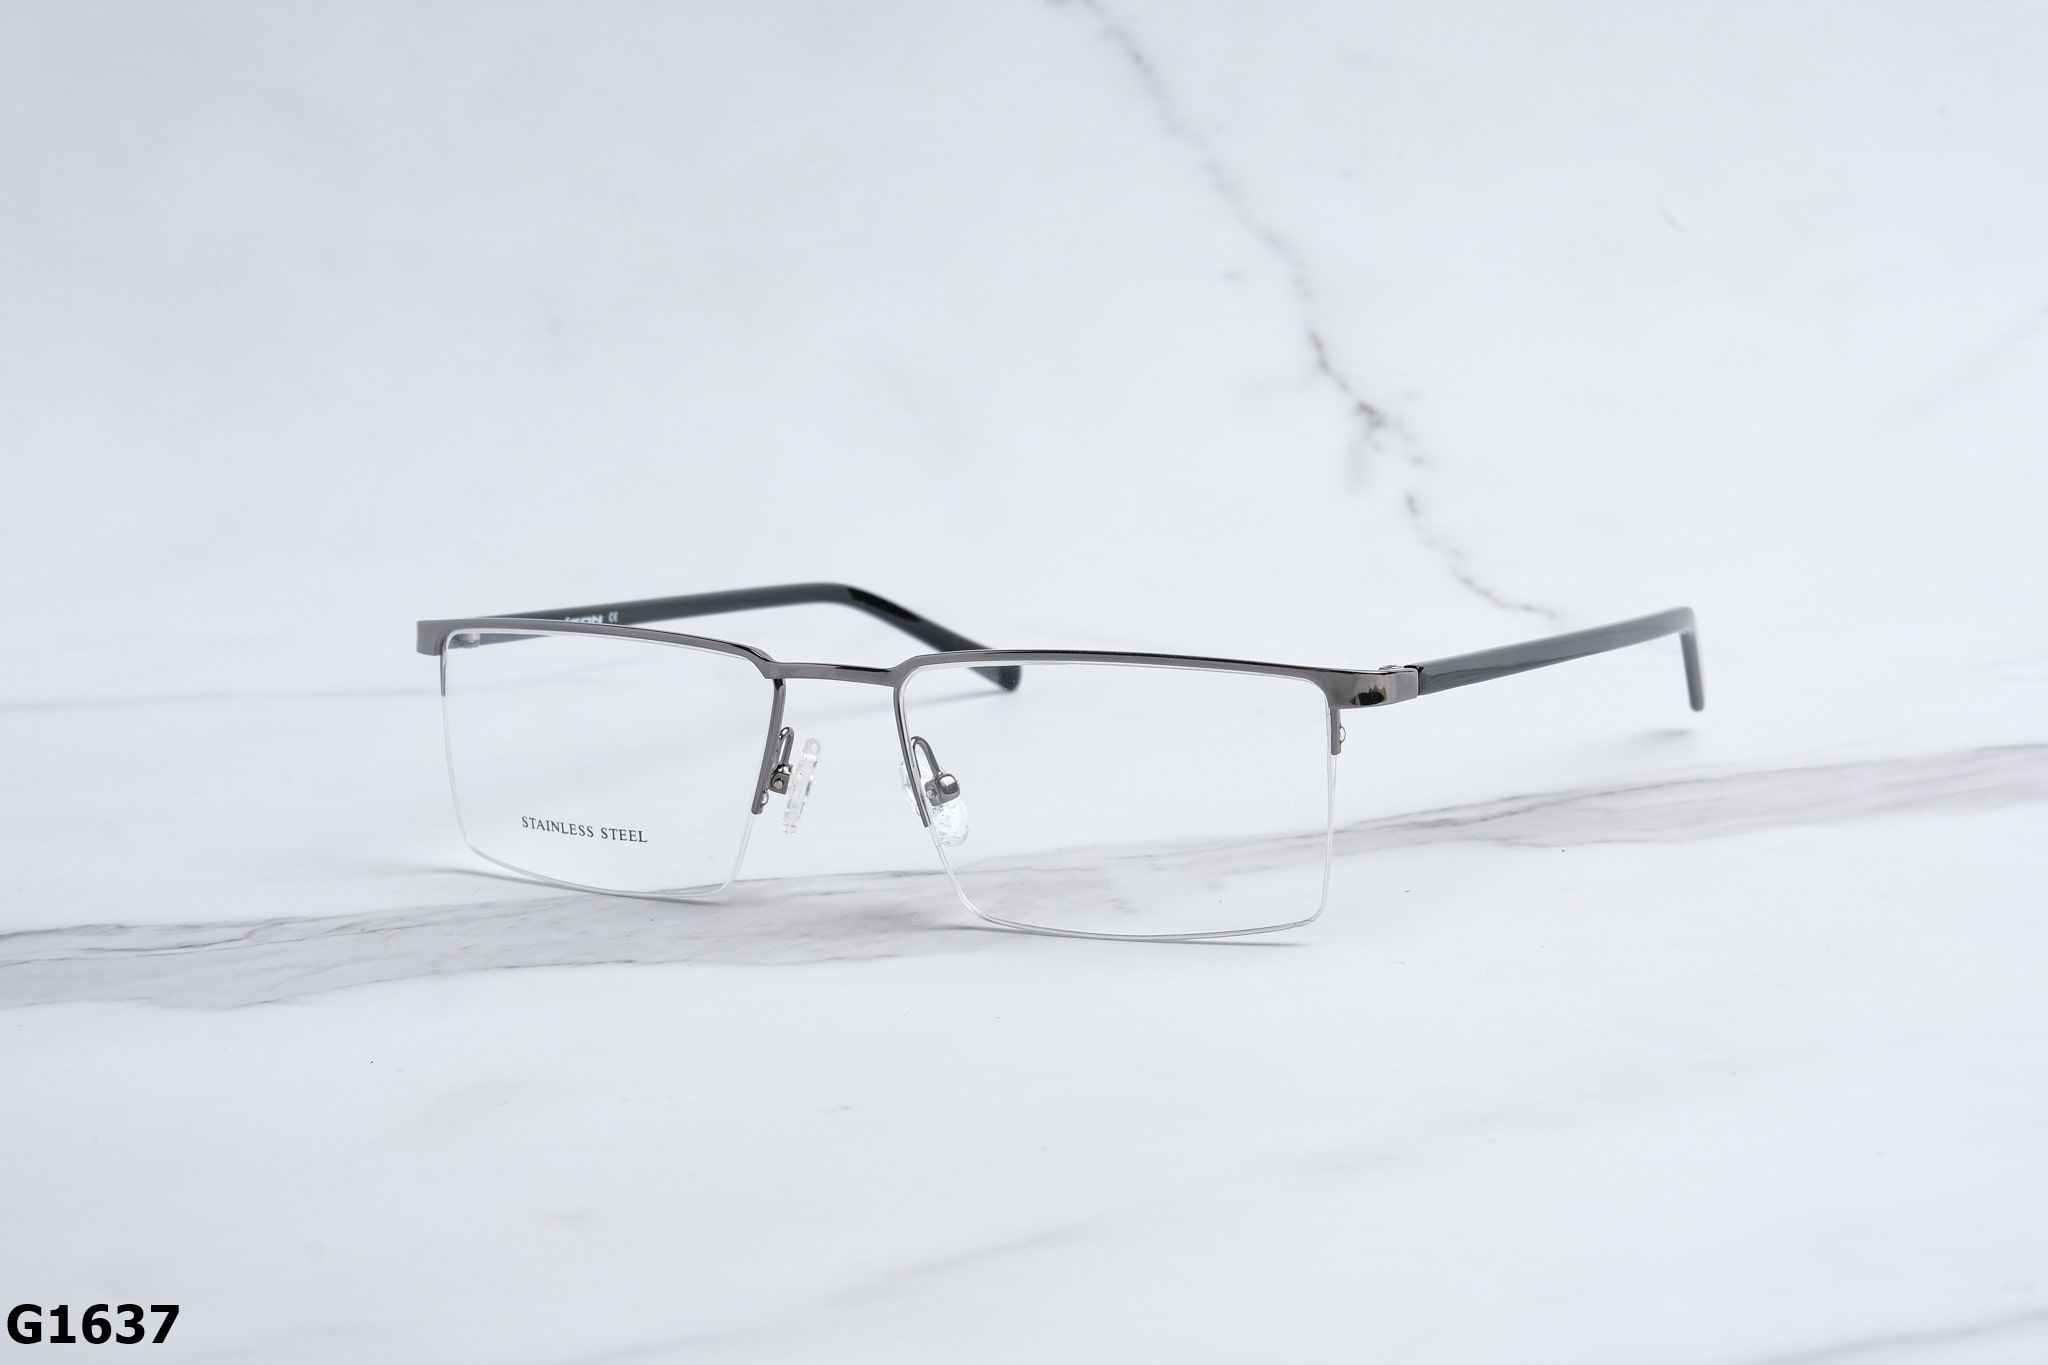  Rex-ton Eyewear - Glasses - G1637 